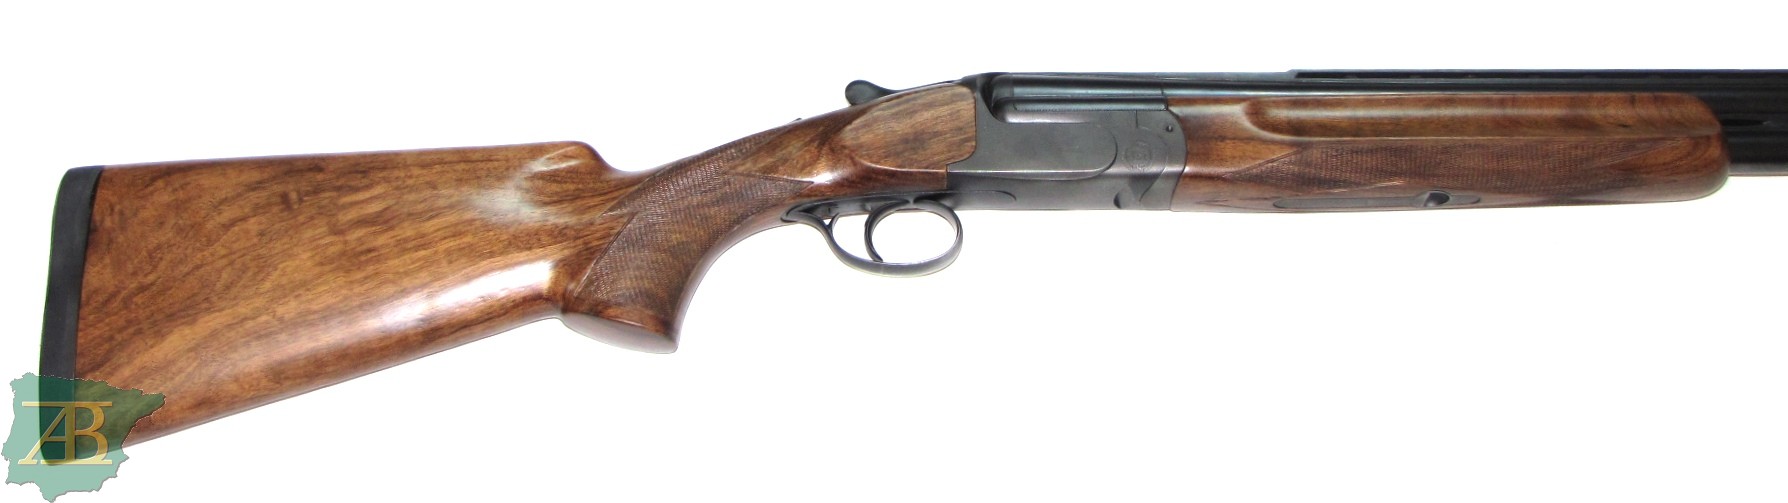 Escopeta superpuesta de TRAP PERAZZI MX8 Ref REP2022-157-armeriaiberica-2